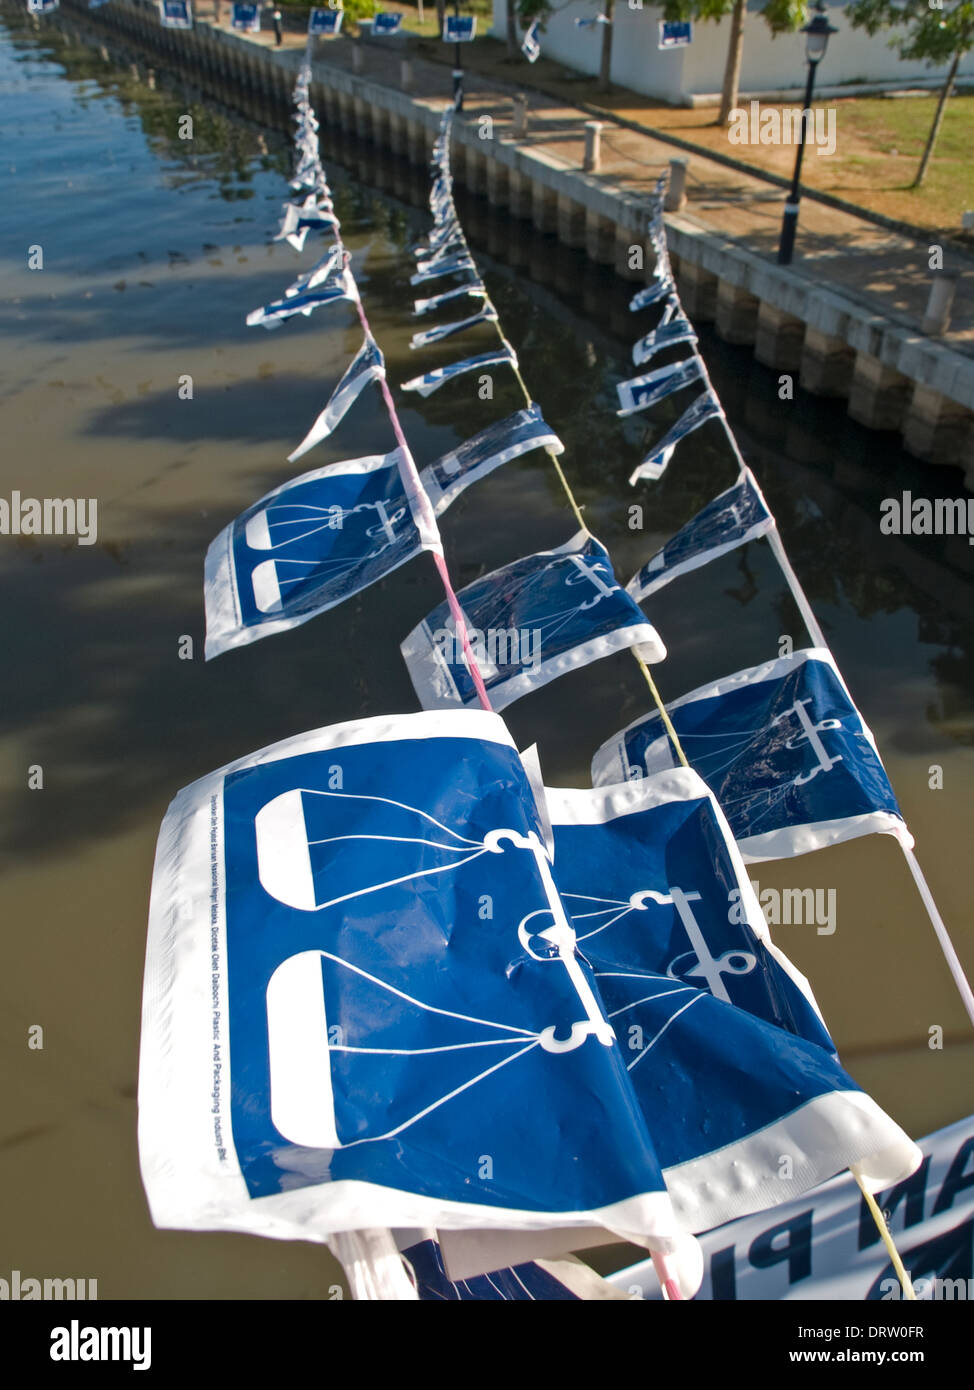 Kunststoff Fahnen mit den blau-weißen Schuppen Symbol der Barisan Nasional politische Partei über das Wasser Stockfoto